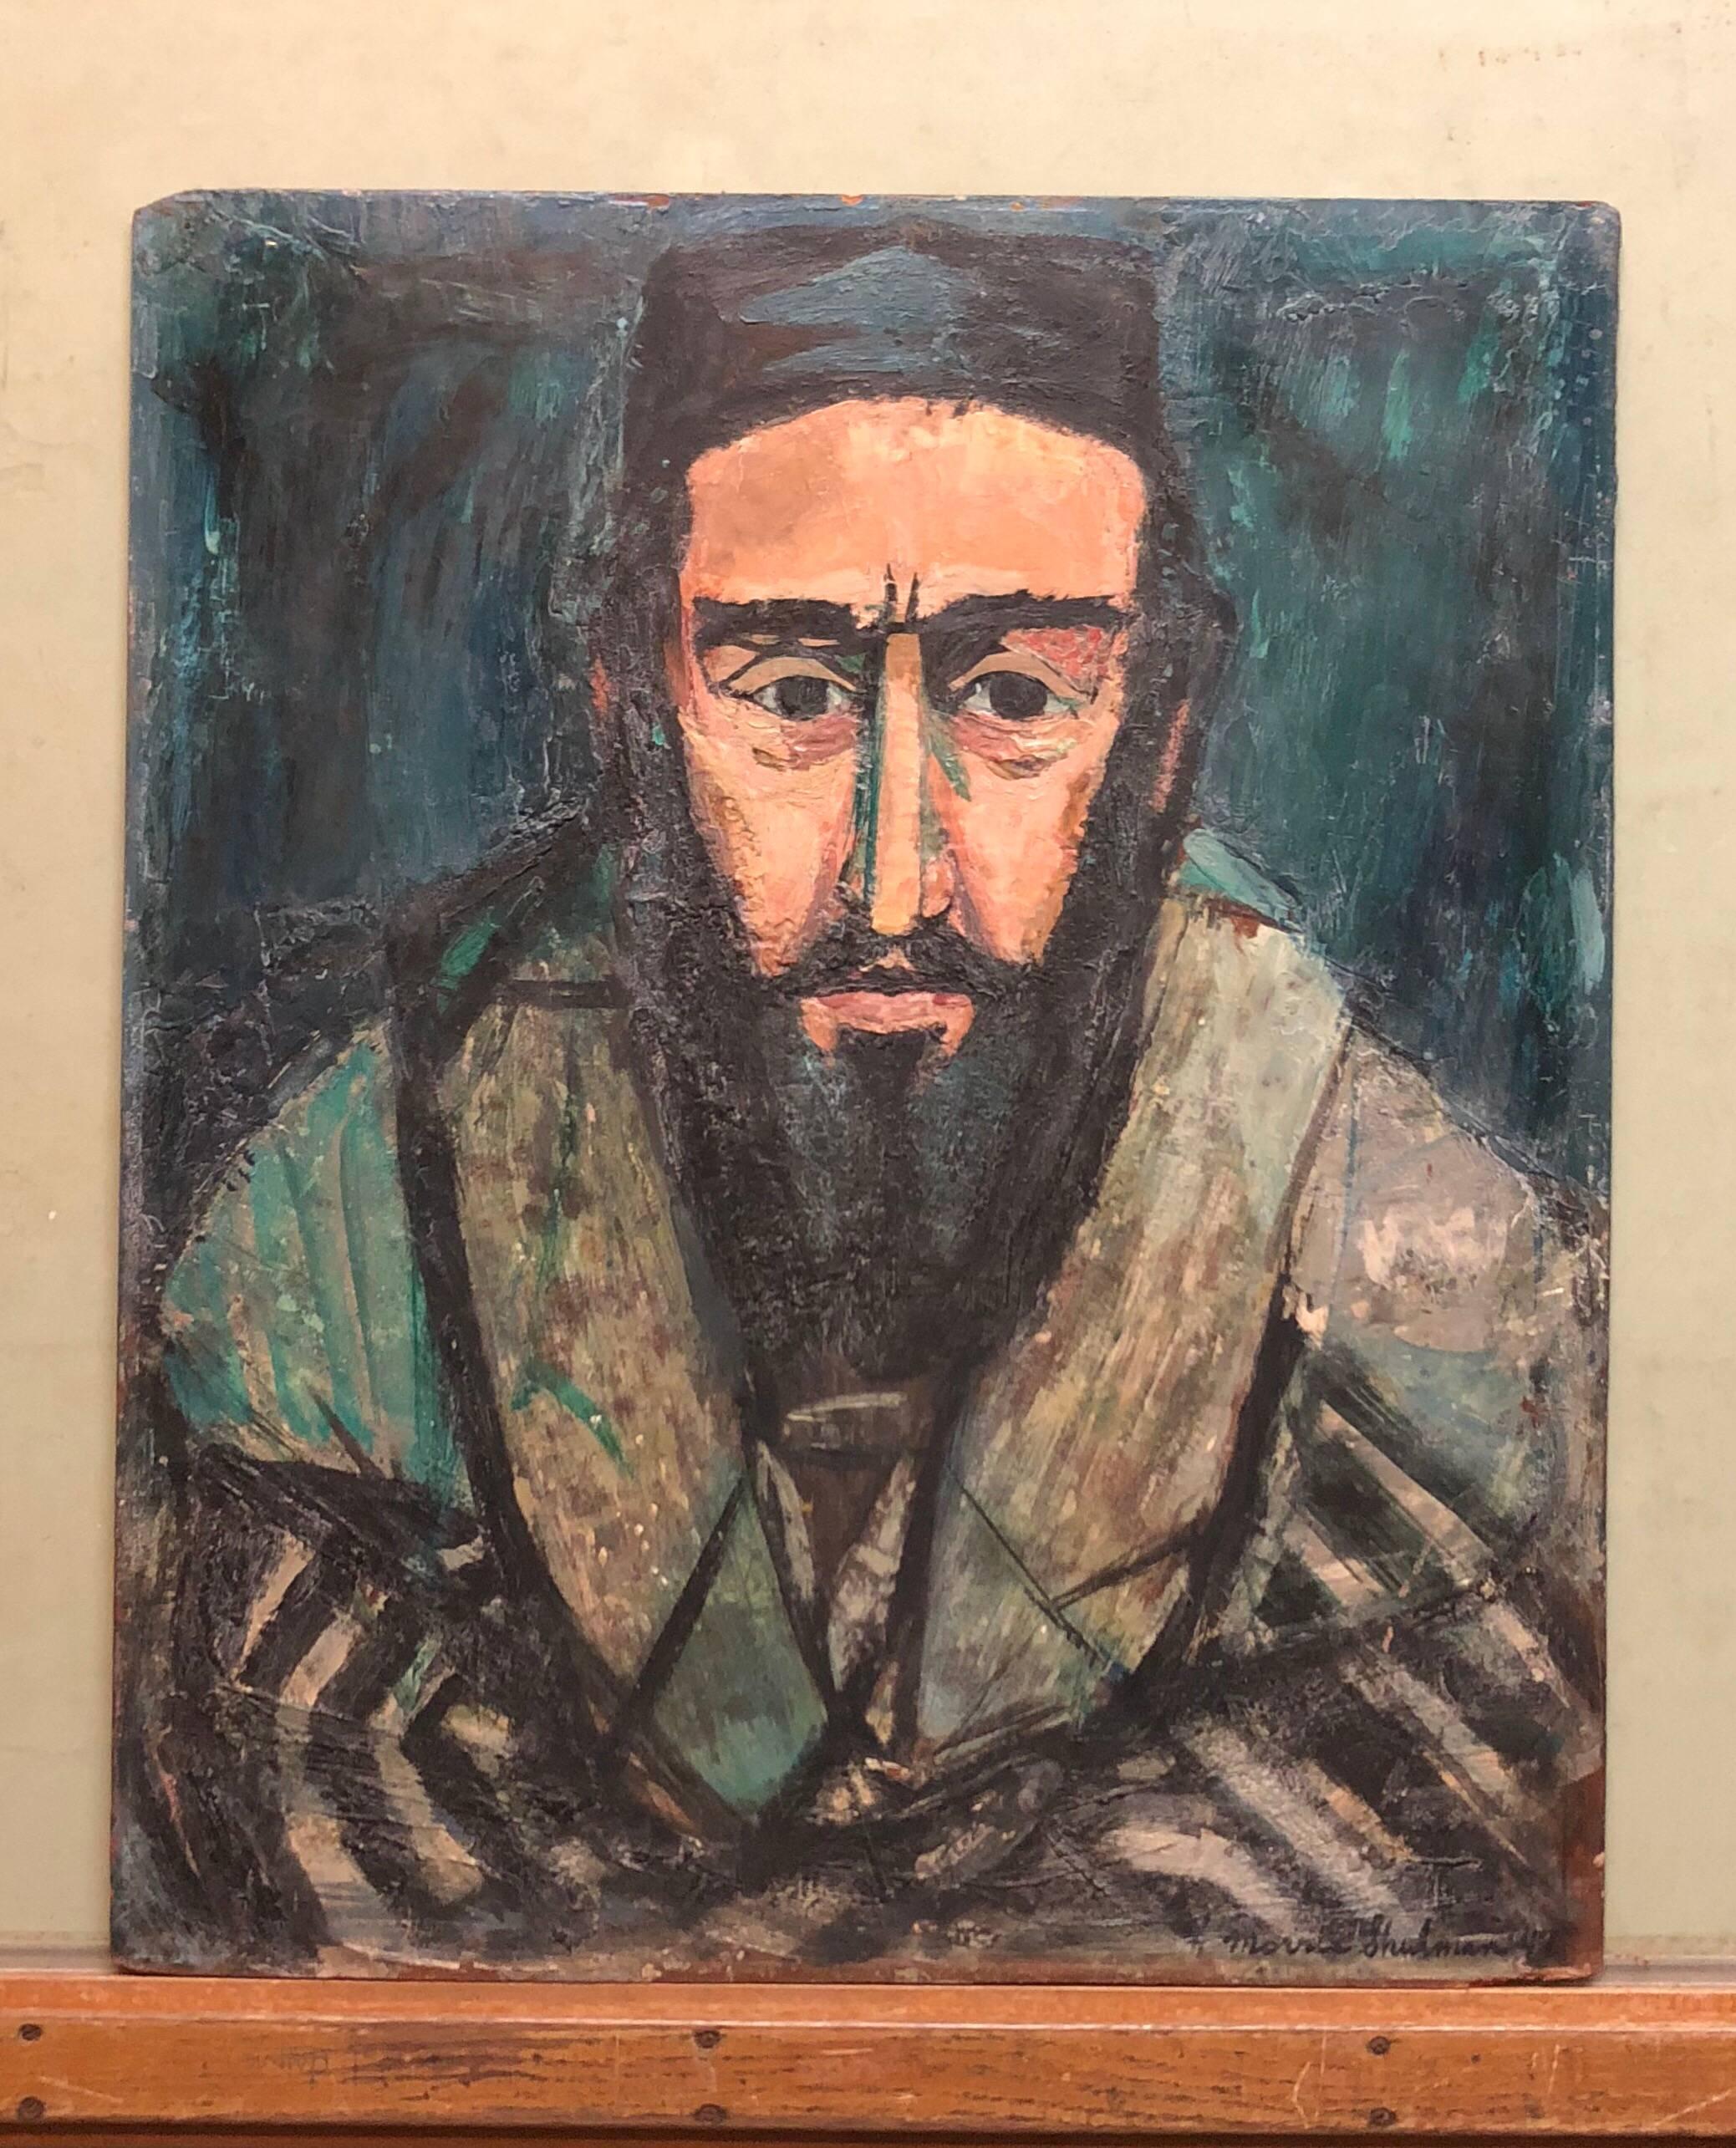 Judaica Rabbi, Porträt, Ölgemälde, amerikanischer WPA-Künstler des Abstrakten Expressionismus – Painting von Morris Shulman